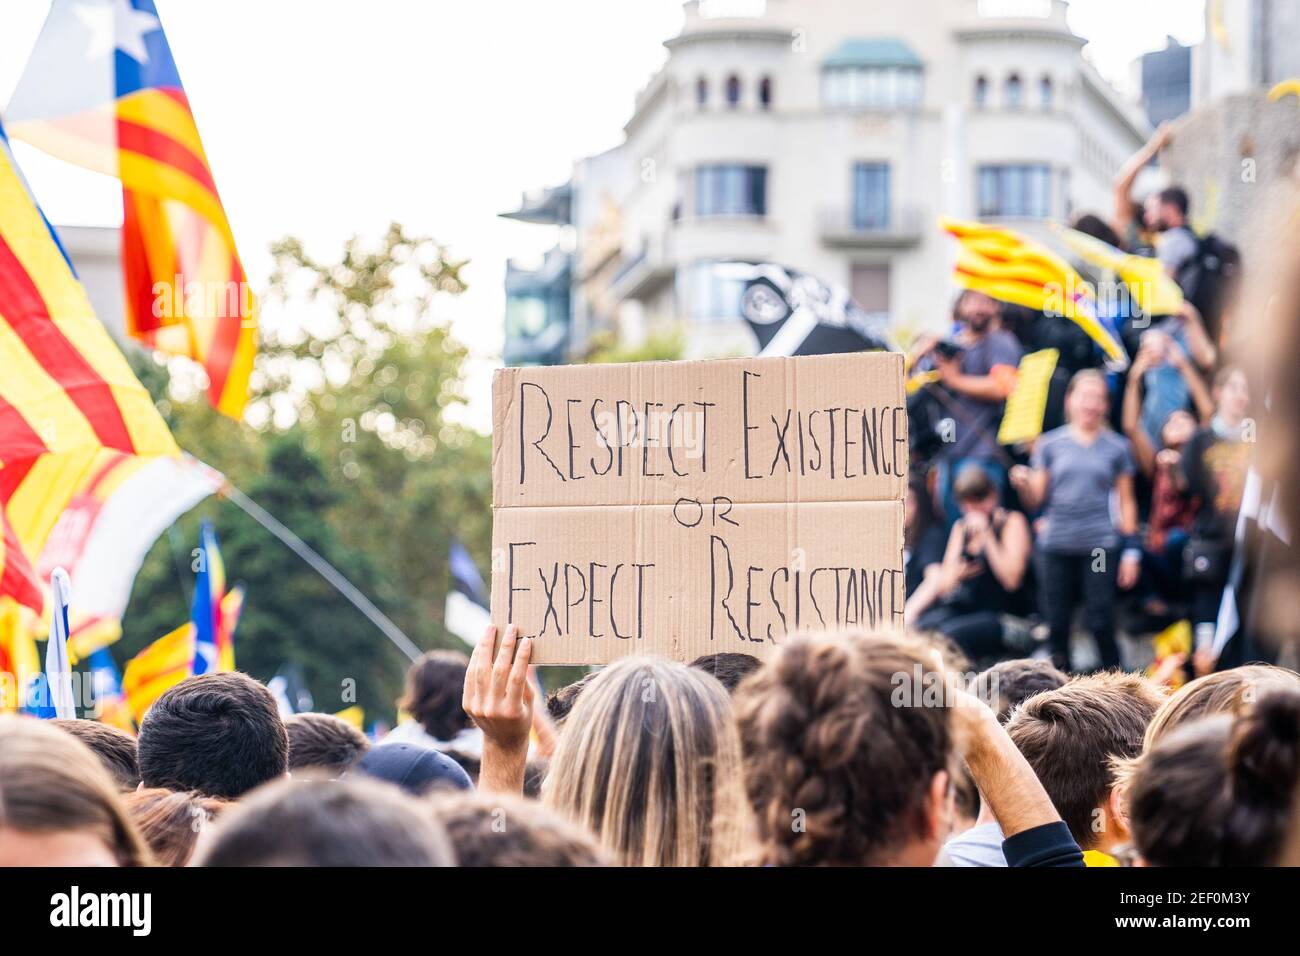 Des personnes à une manifestation demandant la liberté d'expression et la justice contre le fascisme. Arrêter la répression. Mouvement indépendantiste catalan. Pa. De la liberté Banque D'Images